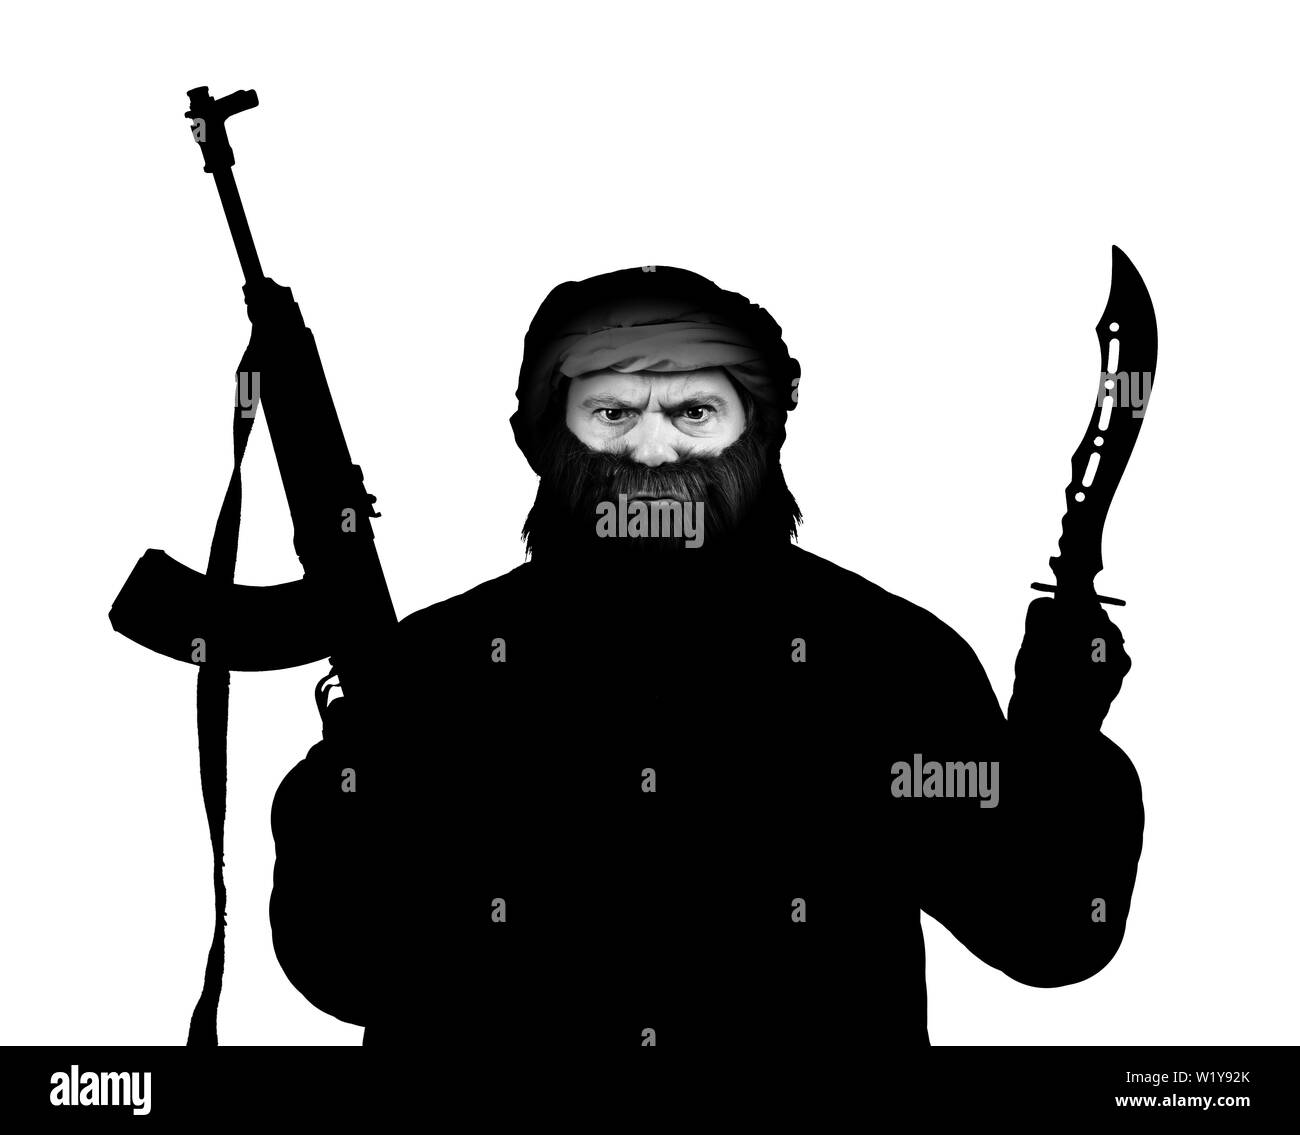 Die schwarze Silhouette des Menschen bewaffnet mit Kalaschnikow und Messer isoliert auf einem weißen Hintergrund. Stockfoto